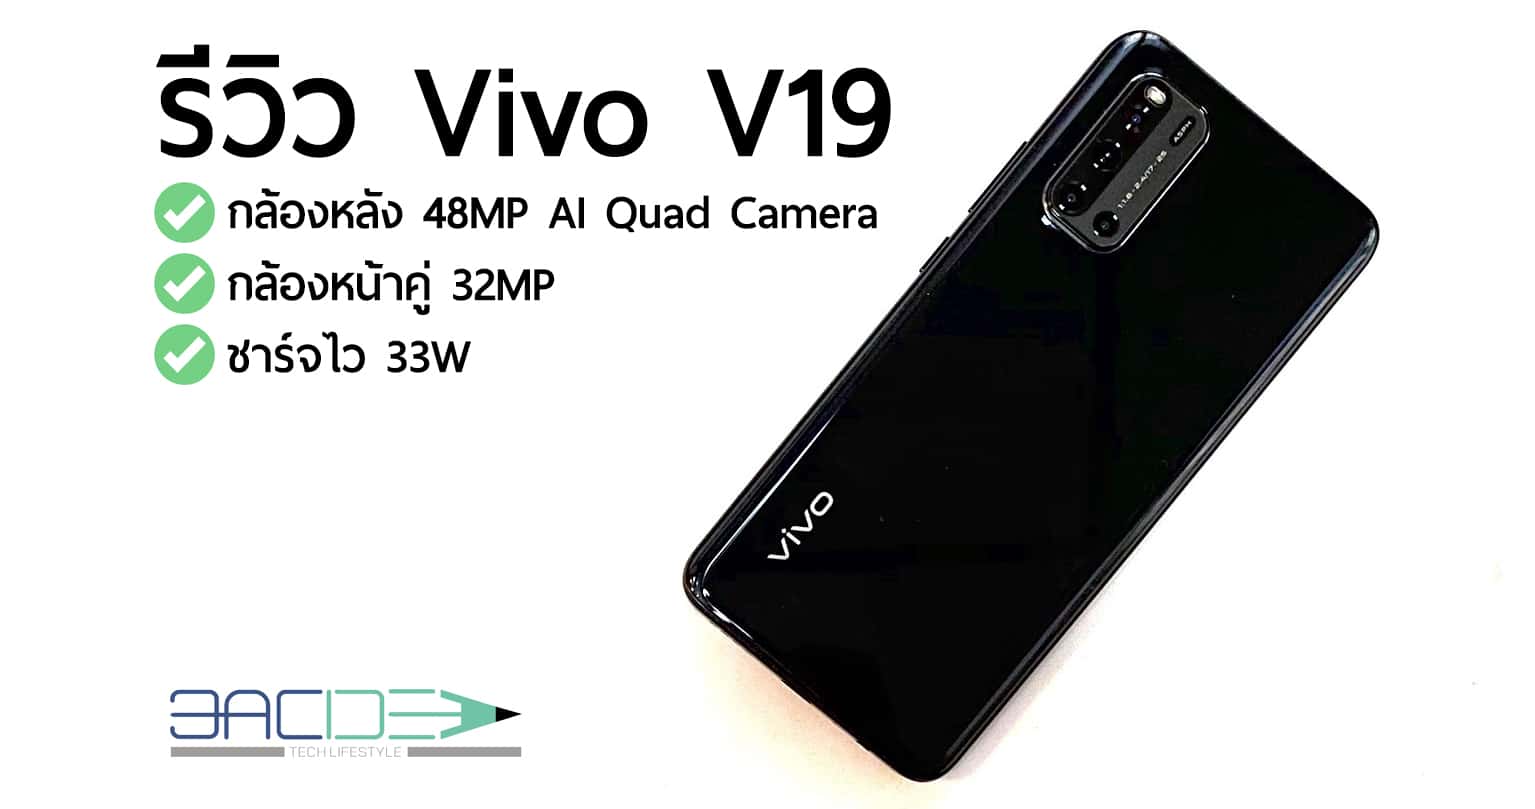 รีวิว Vivo V19 สเปคแรง ดีไซน์หรู กล้องหน้าคู่ 32 MP เซลฟี่แจ่ม ถ่ายภาพกลางคืนสุดแหล่มด้วยกล้องหลัง 4 ตัว 1